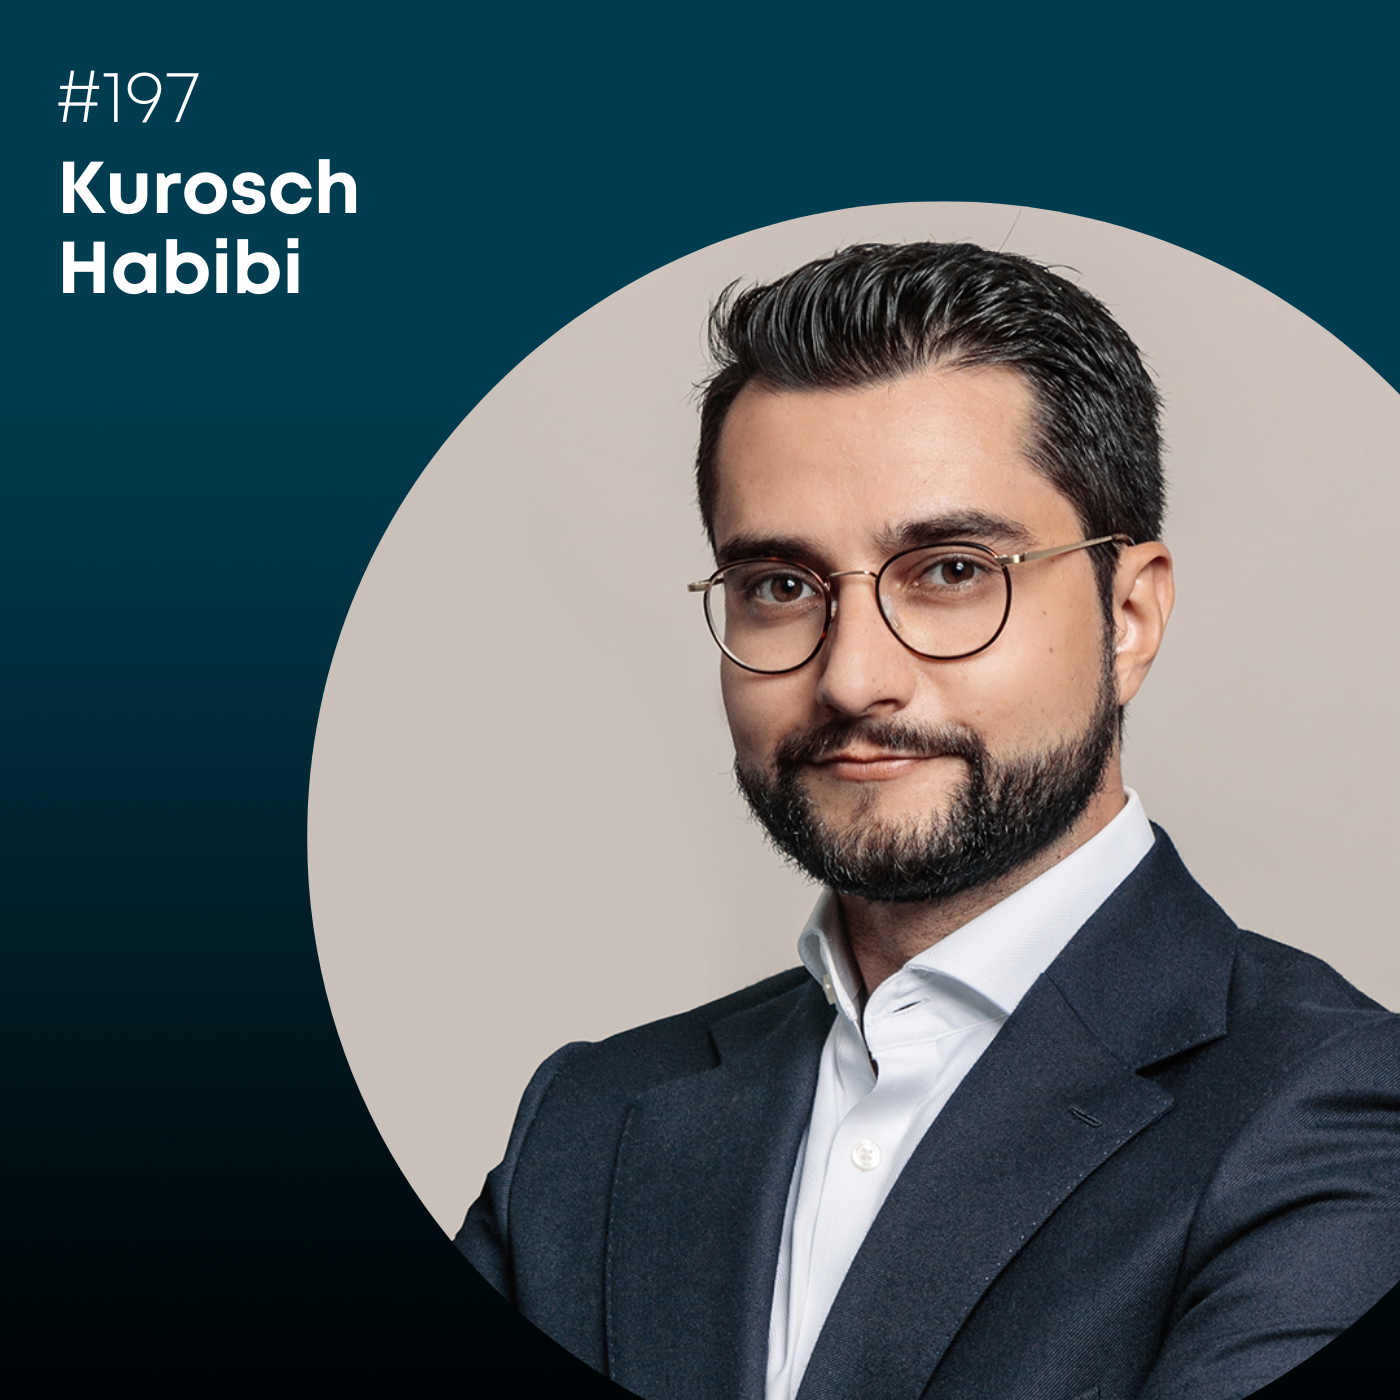 Folge 197: Kurosch Habibi, wie findet man einen Nachfolger für sein Unternehmen?